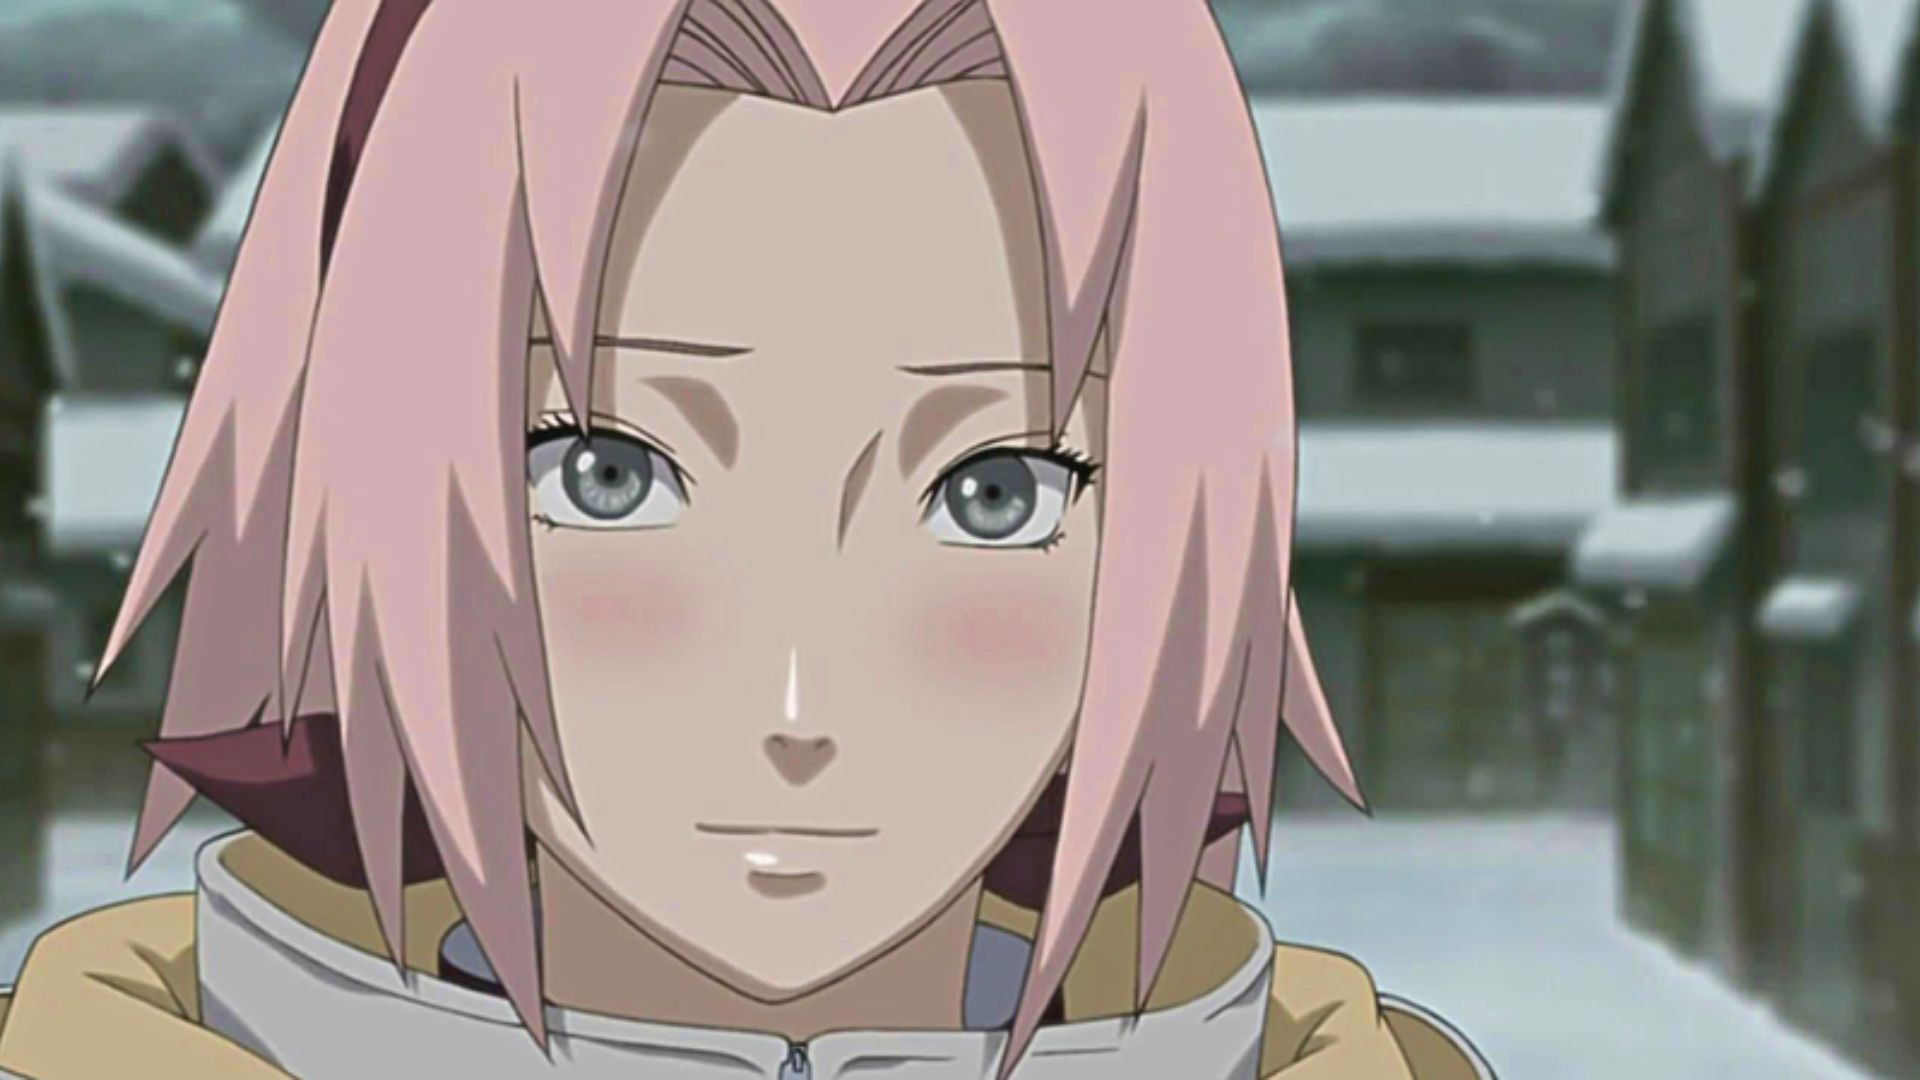 Sakura Haruno, as seen in Naruto Shippuden (Image via Studio Pierrot)